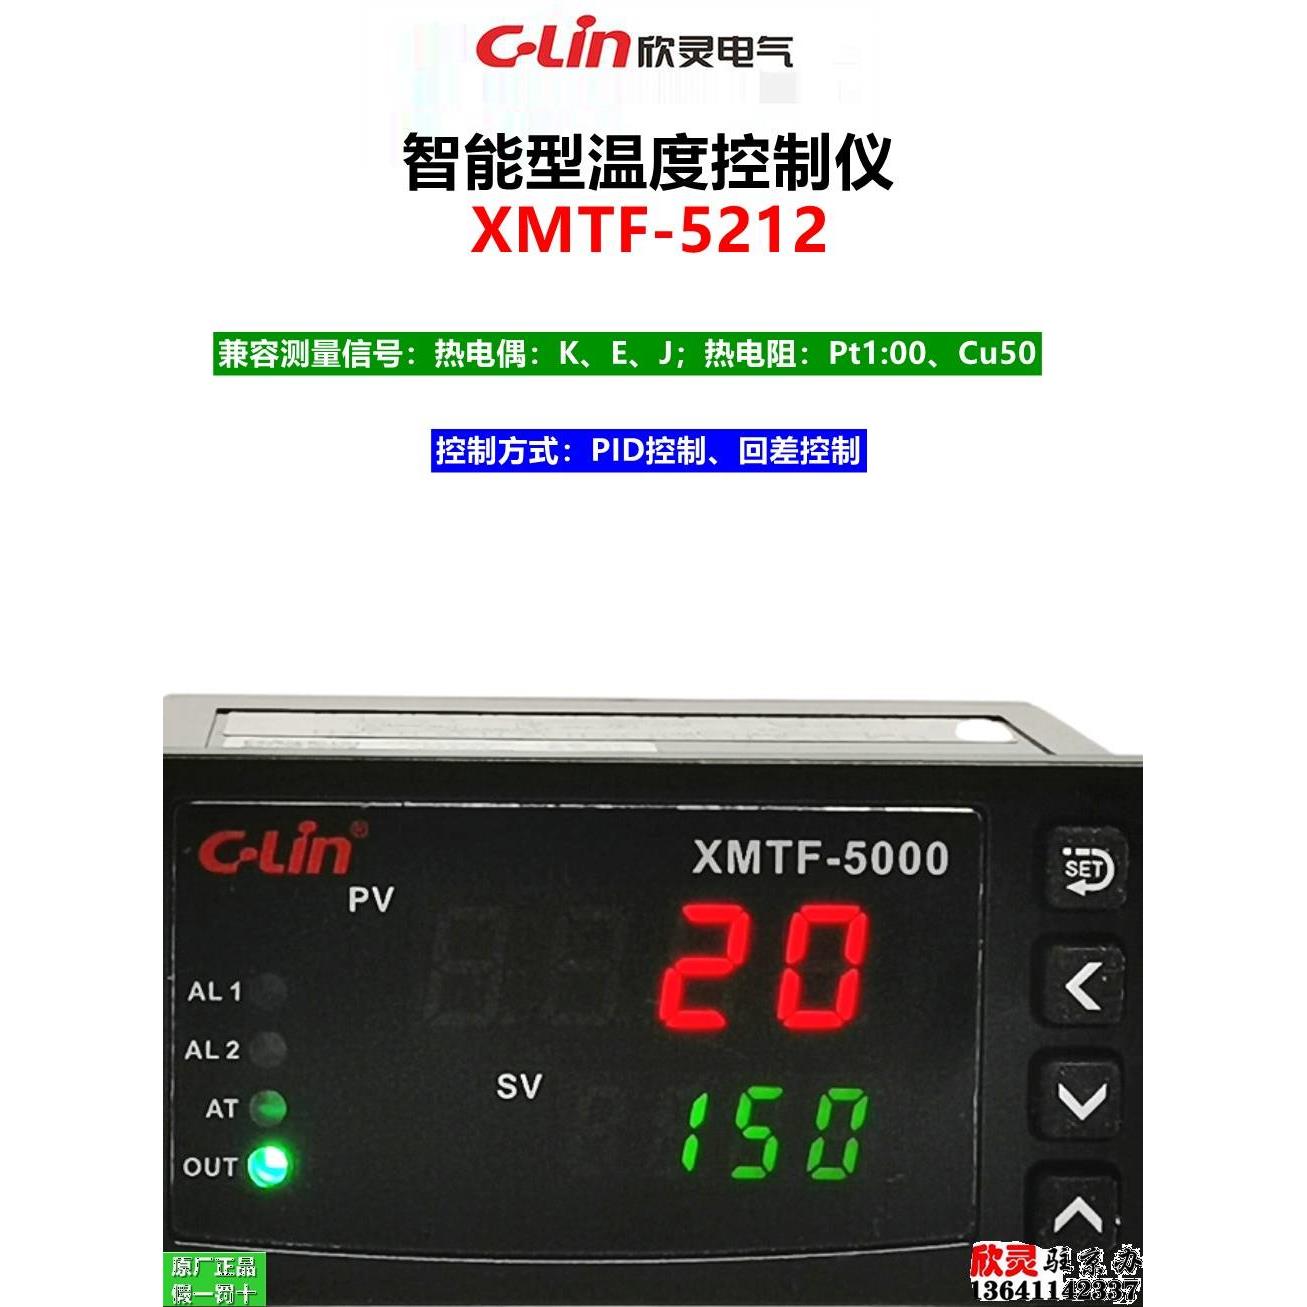 欣灵智能温度控制仪XMTF-5000 XMTF-5212 PID控制器 回差温控器